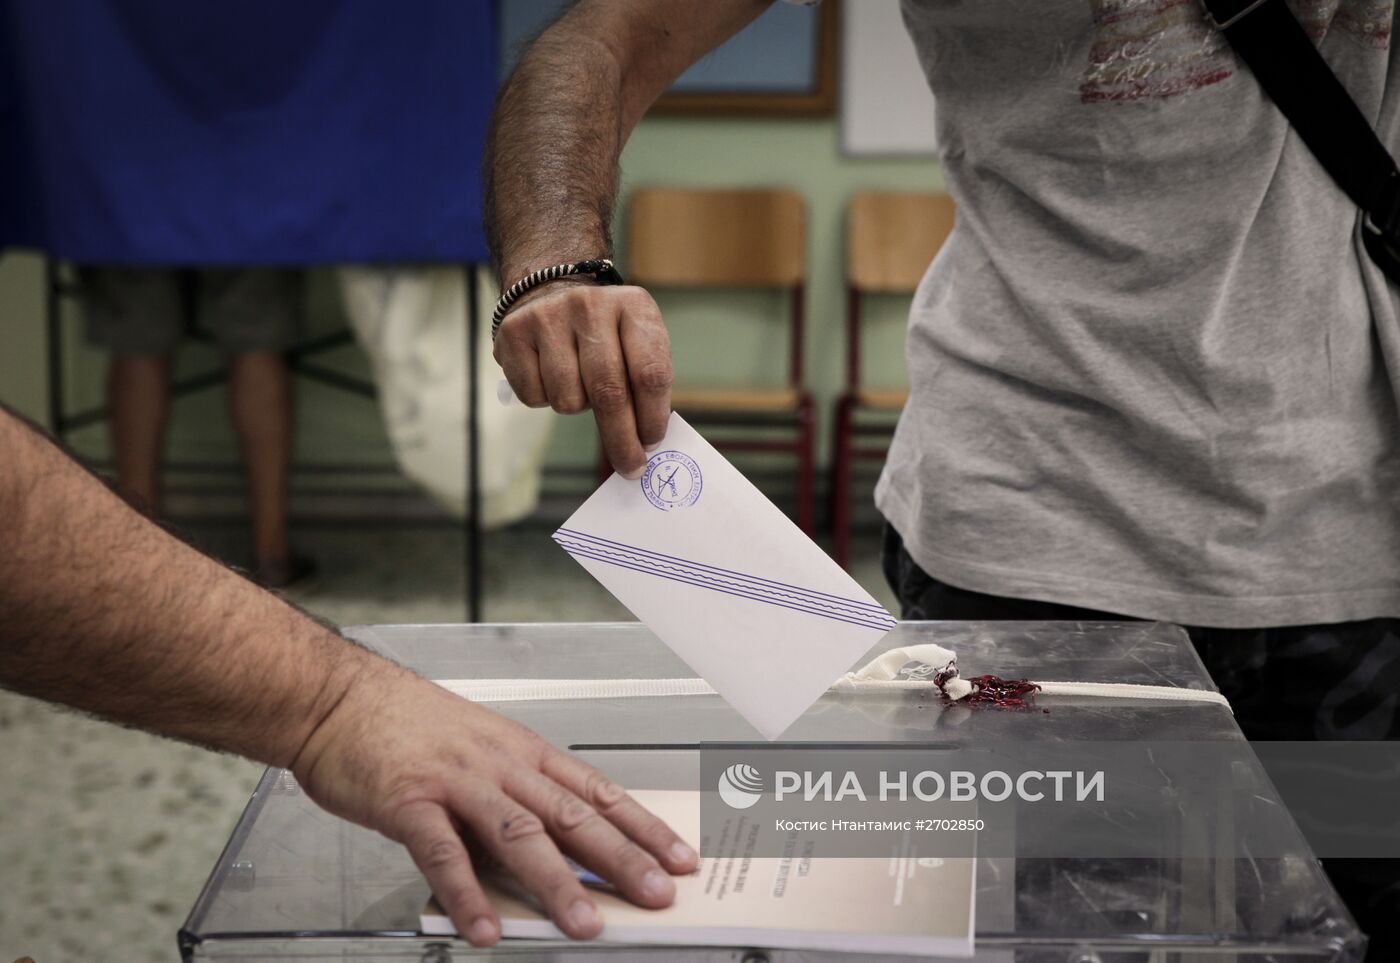 Досрочные парламентские выборы в Греции